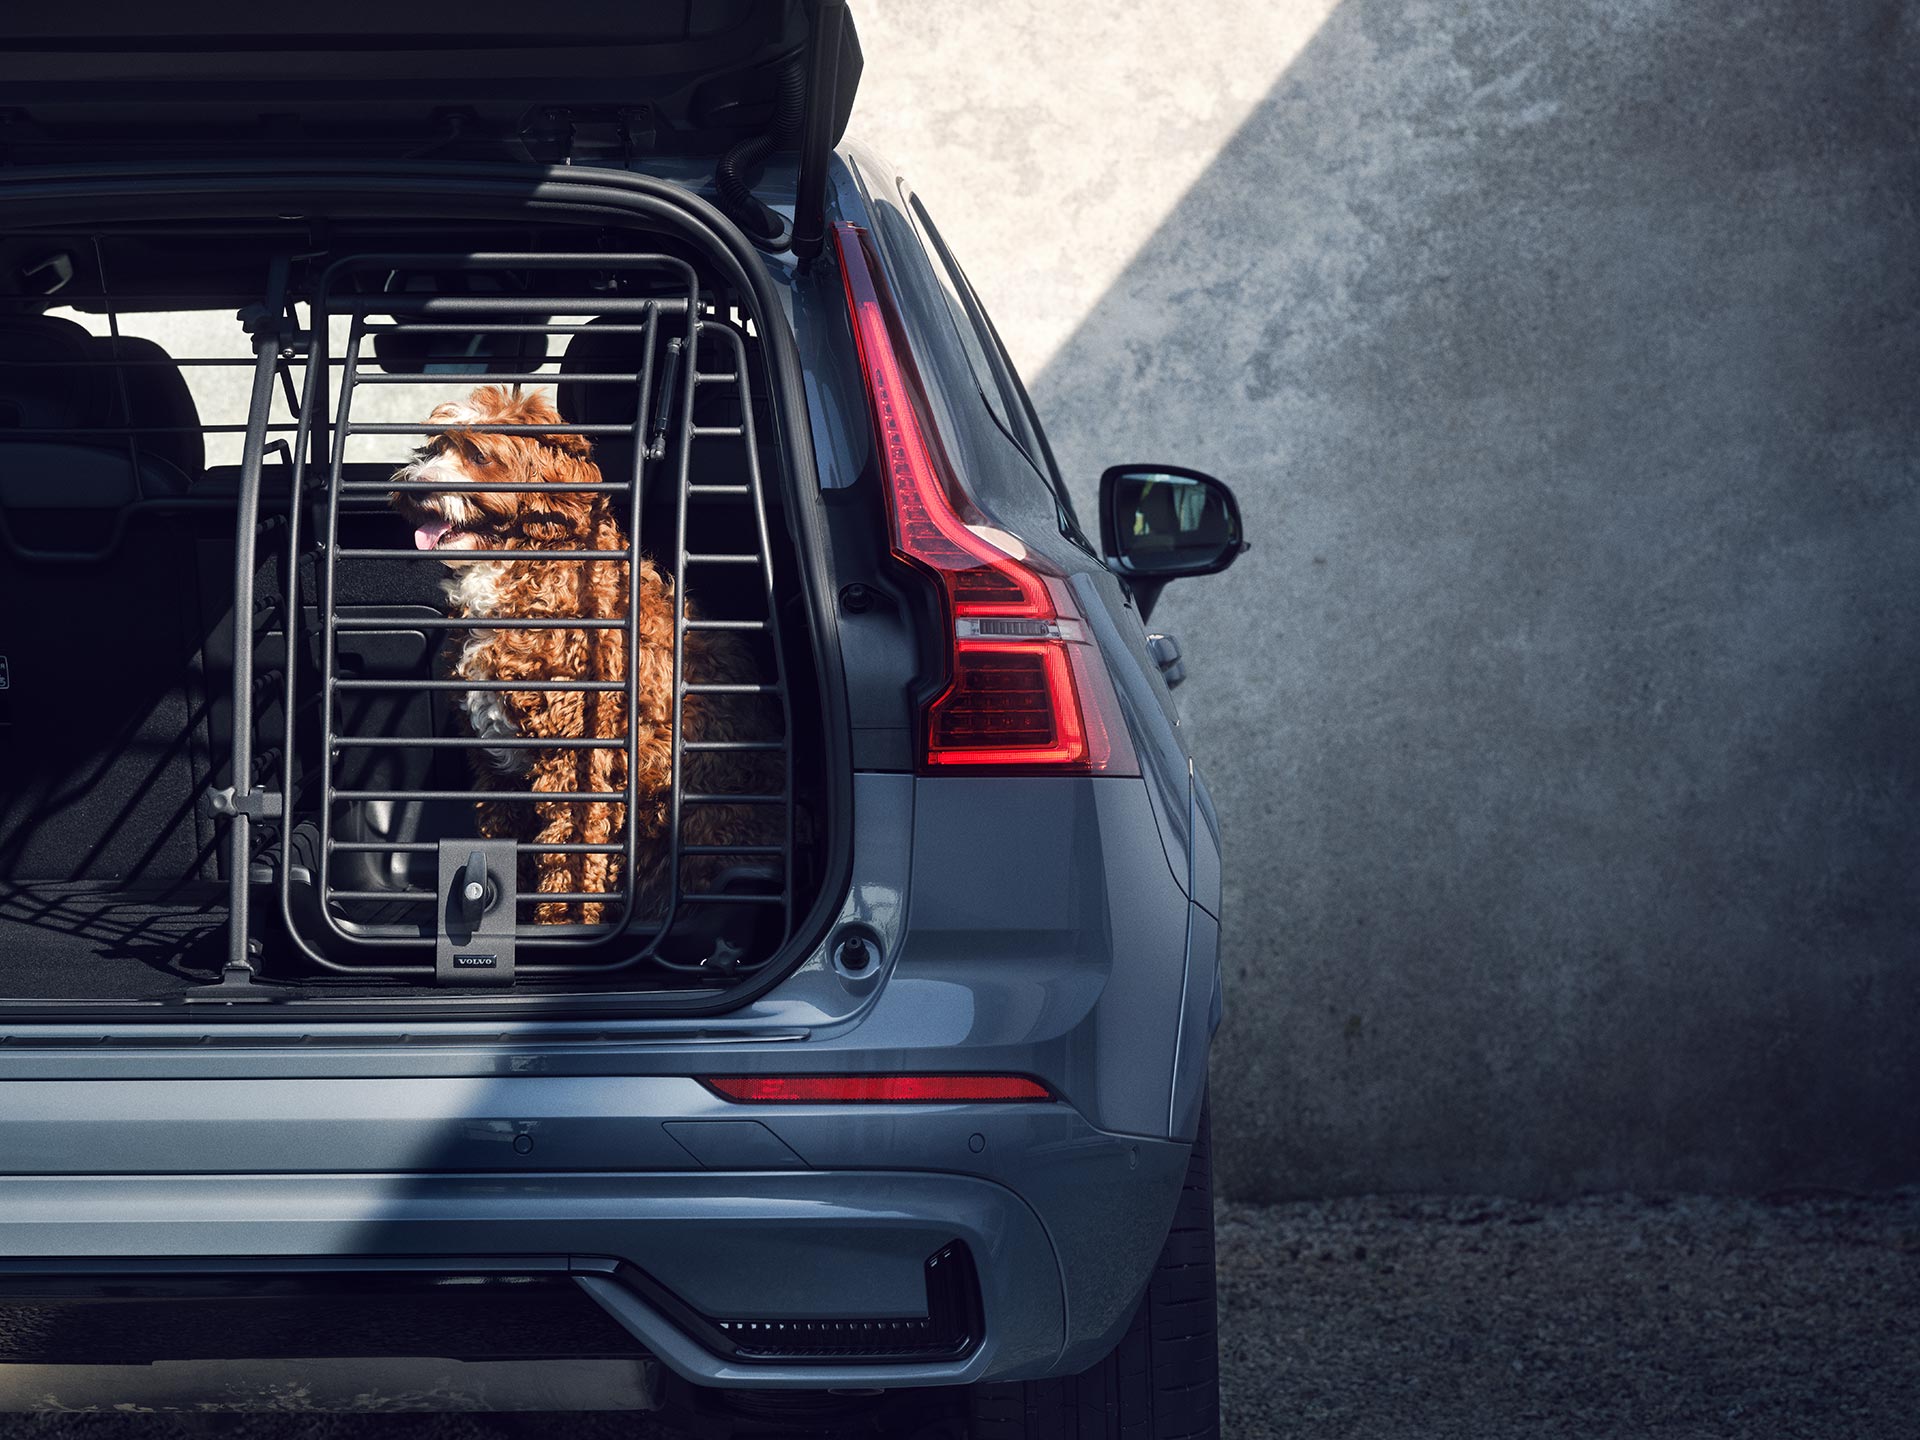 Um cão bege sentado numa caixa de transporte segura, um acessório concebido especificamente para a segurança e o conforto dos animais domésticos transportados nos automóveis Volvo.